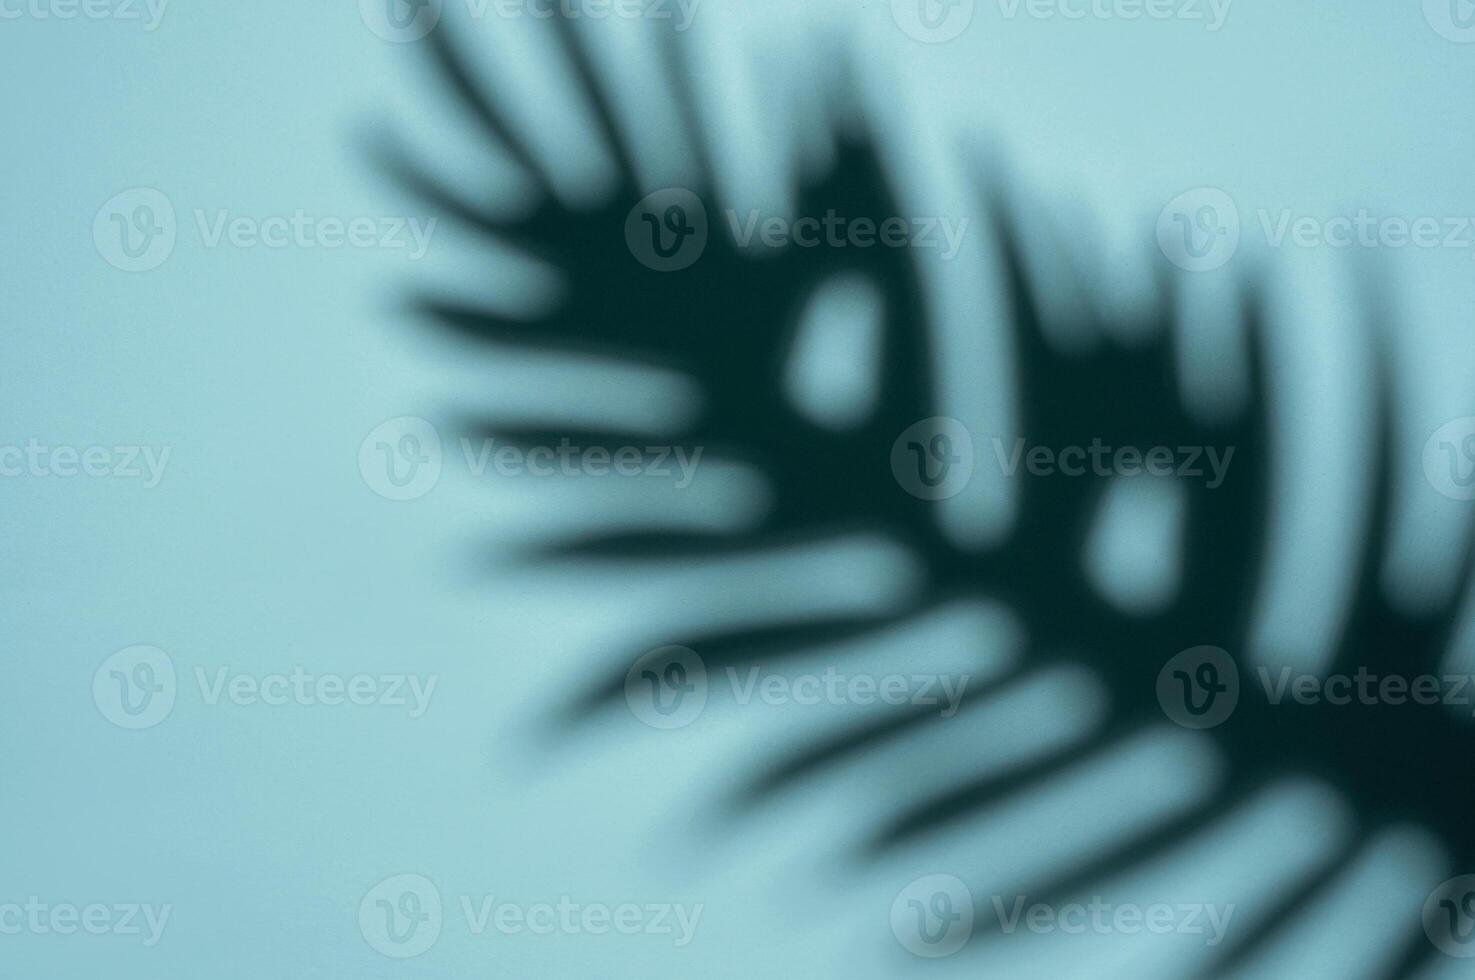 abstrakt skugga av en tropisk blad på en ljus blå bakgrund i mjuk fokus foto